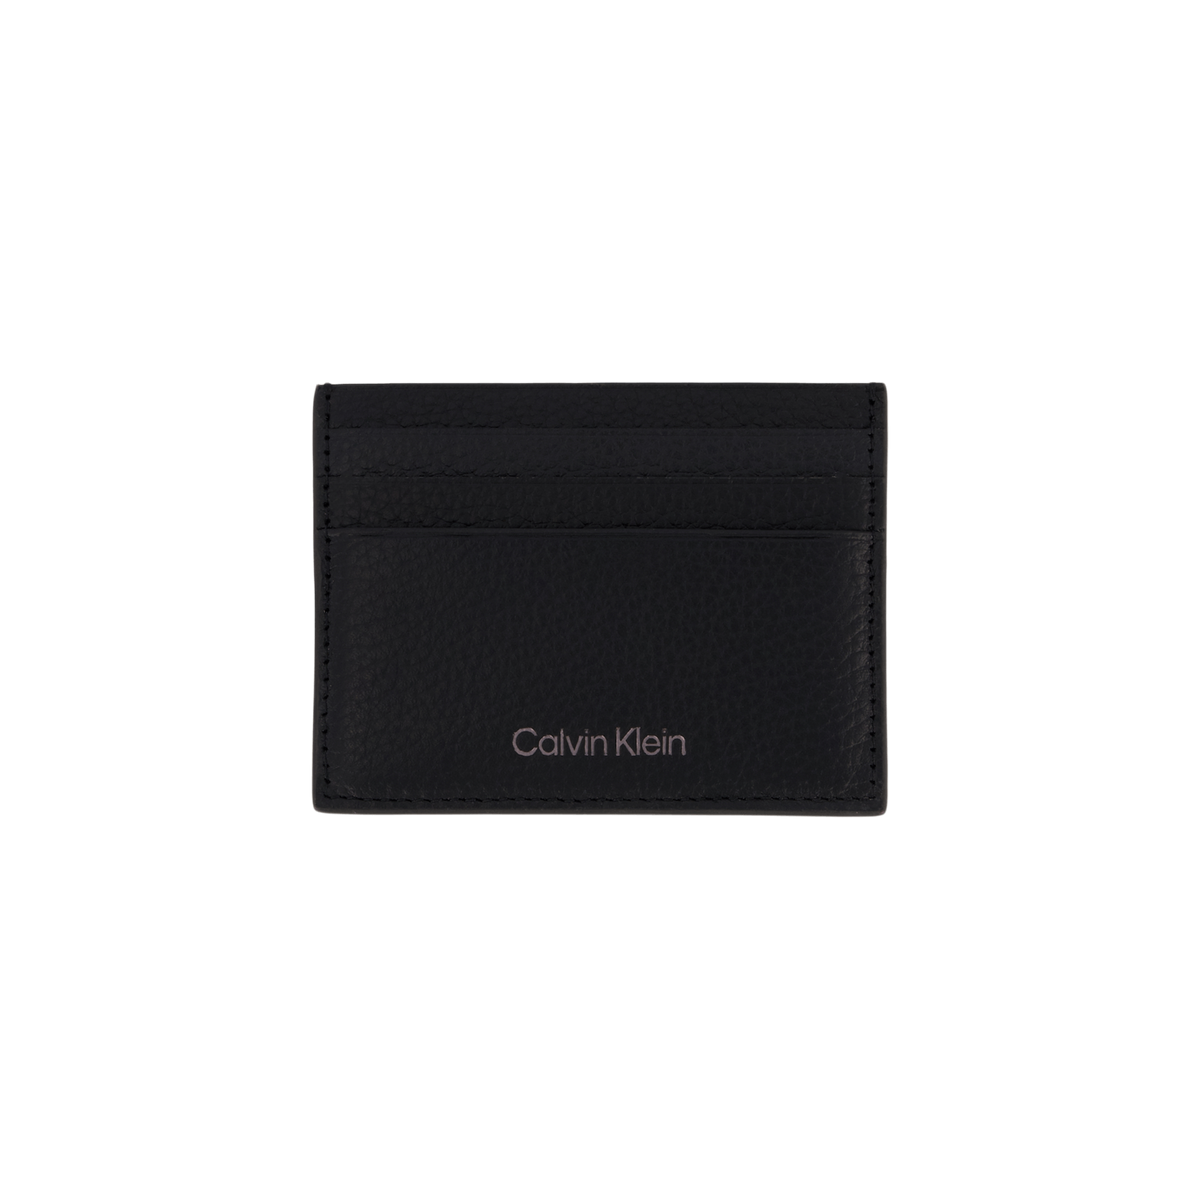 Calvin Klein Warmth Cardholder 6cc